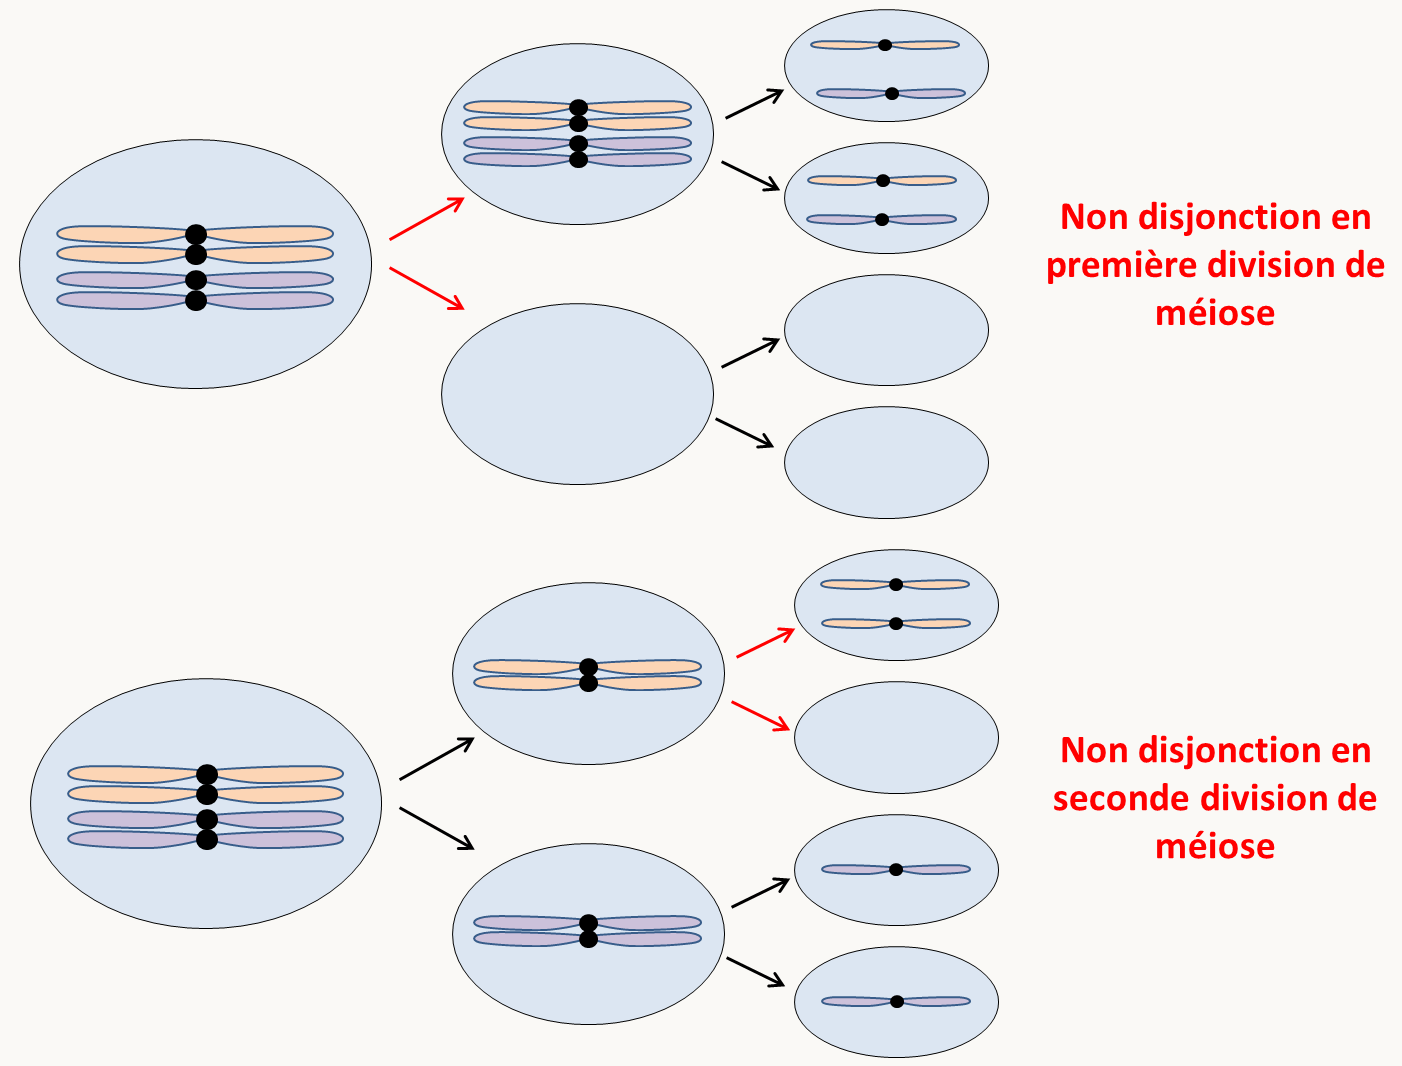 l'absence de disjonction des chromosomes en première ou seconde division de méiose conduit à des aneuploïdies.